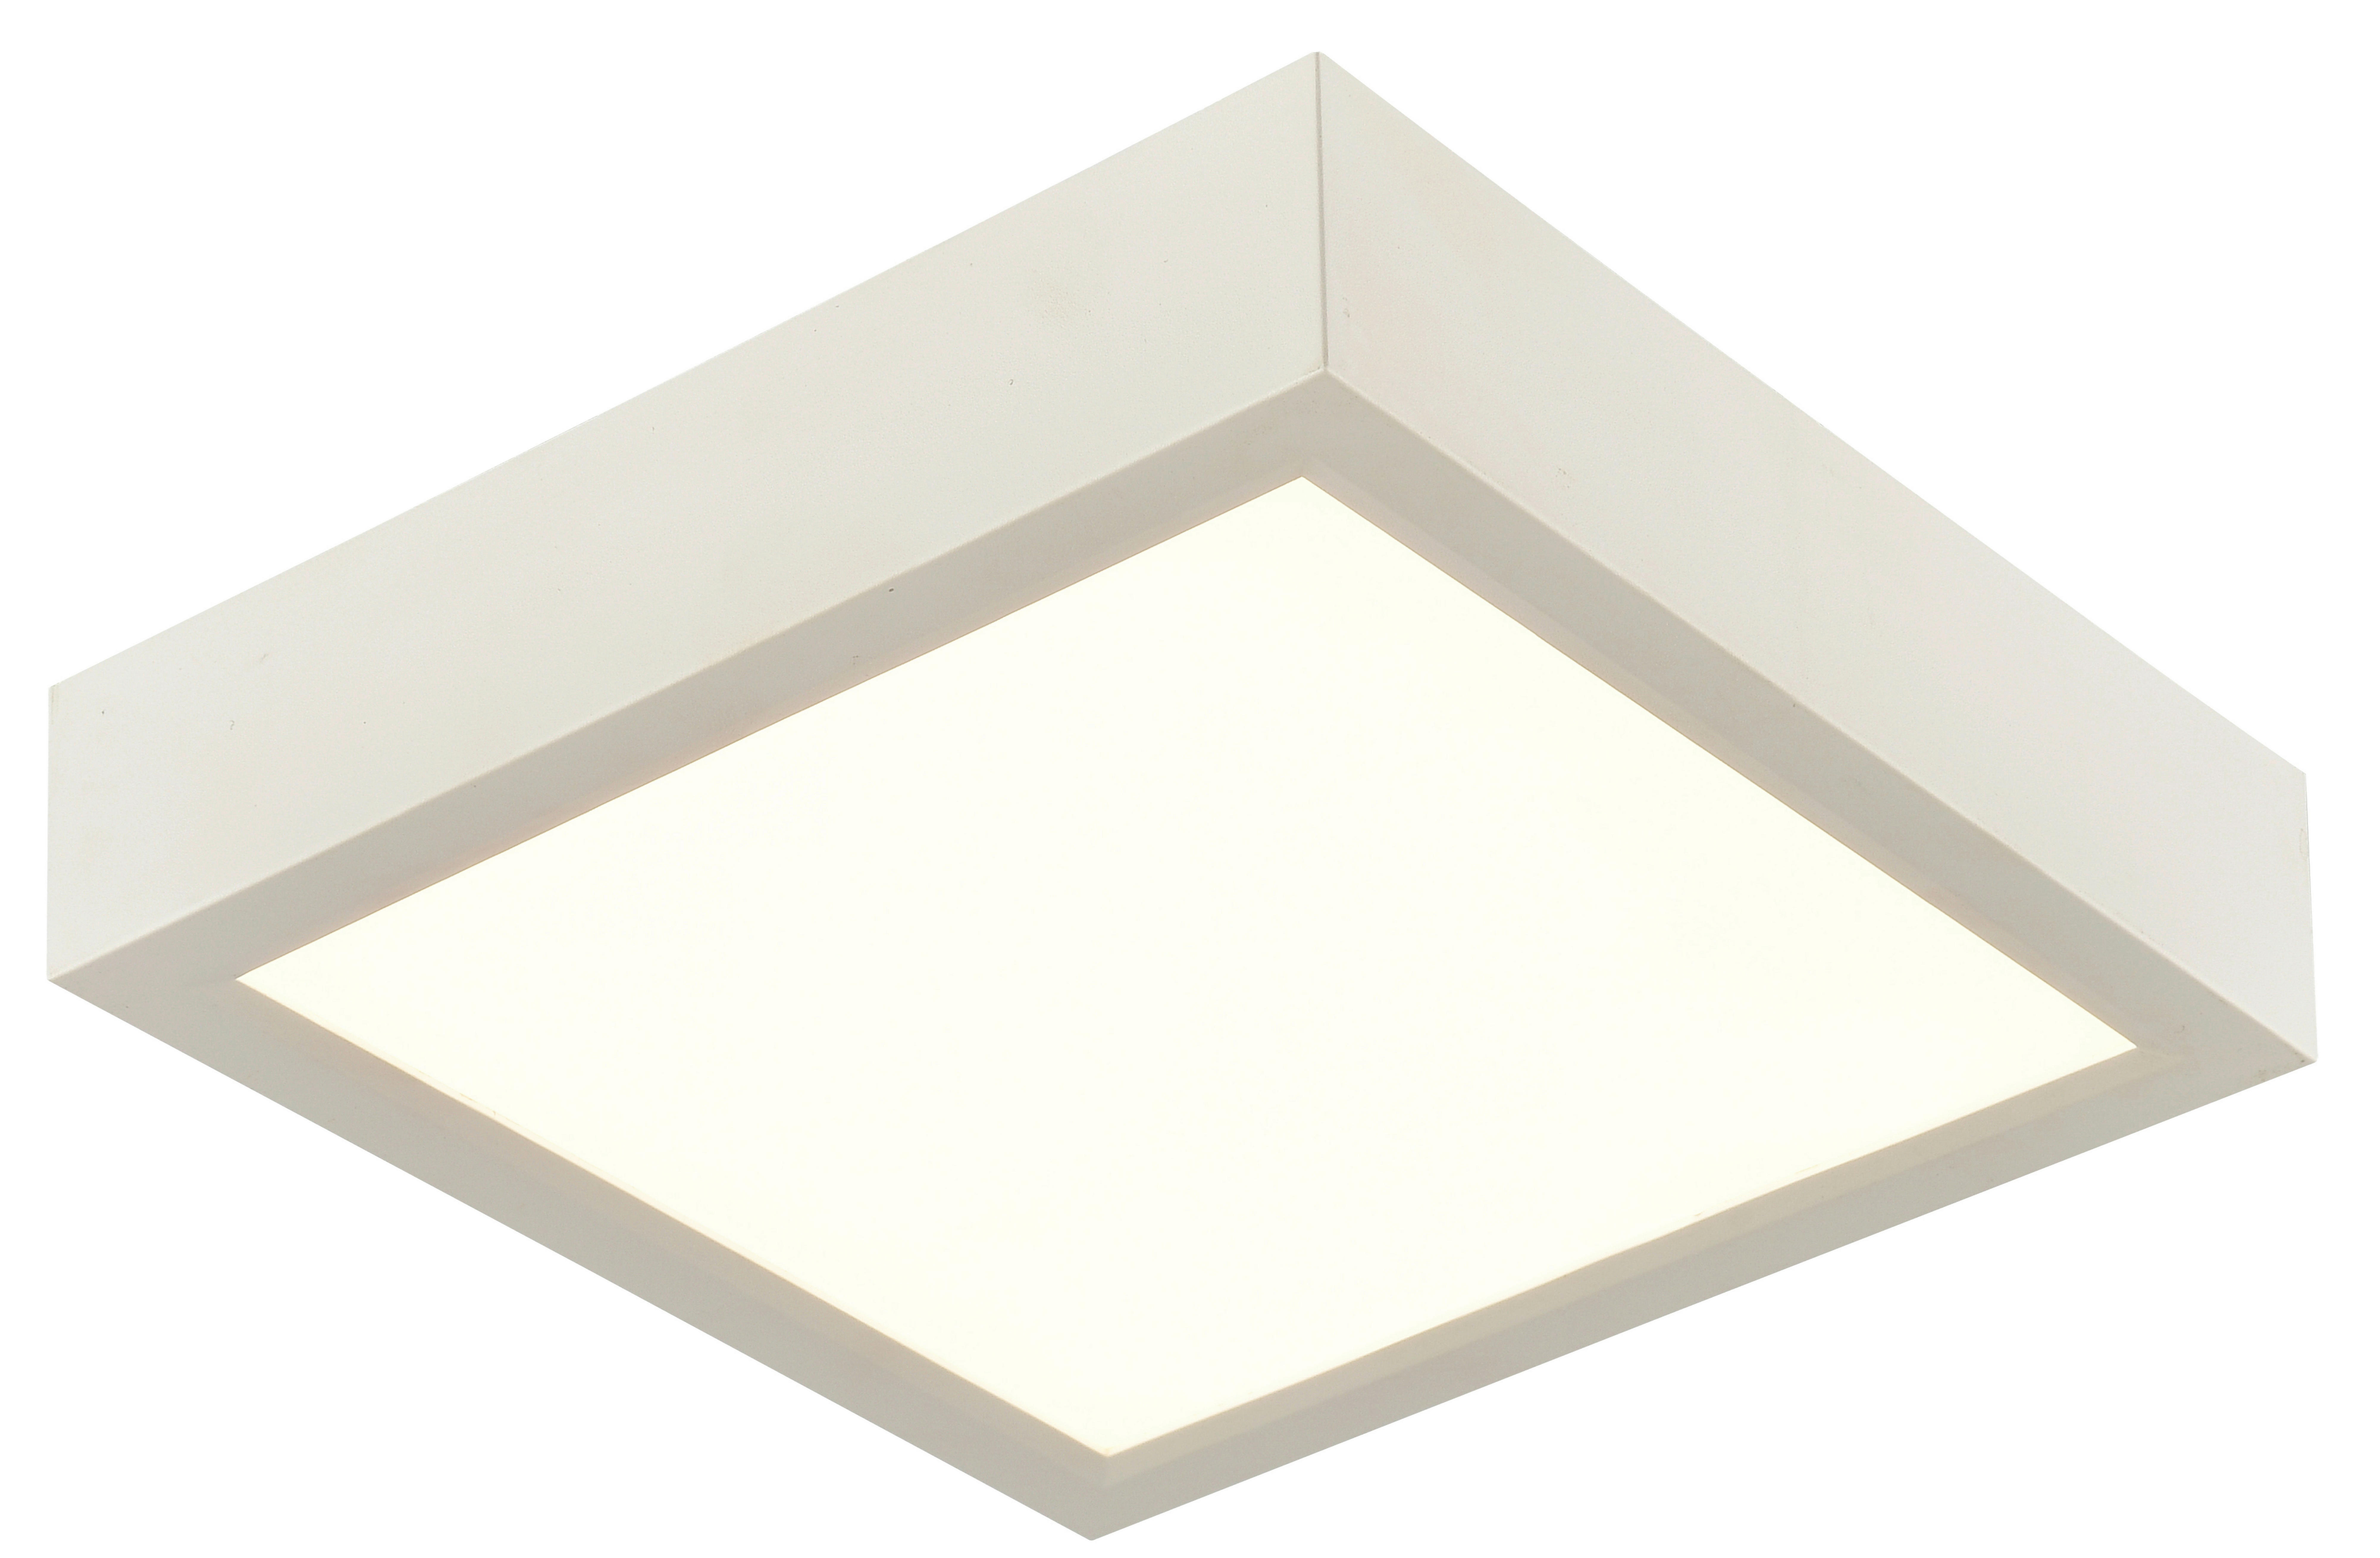 LED-DECKENLEUCHTE 15 W    22,5/22,5/3,6 cm  - Weiß, KONVENTIONELL, Kunststoff (22,5/22,5/3,6cm) - Boxxx